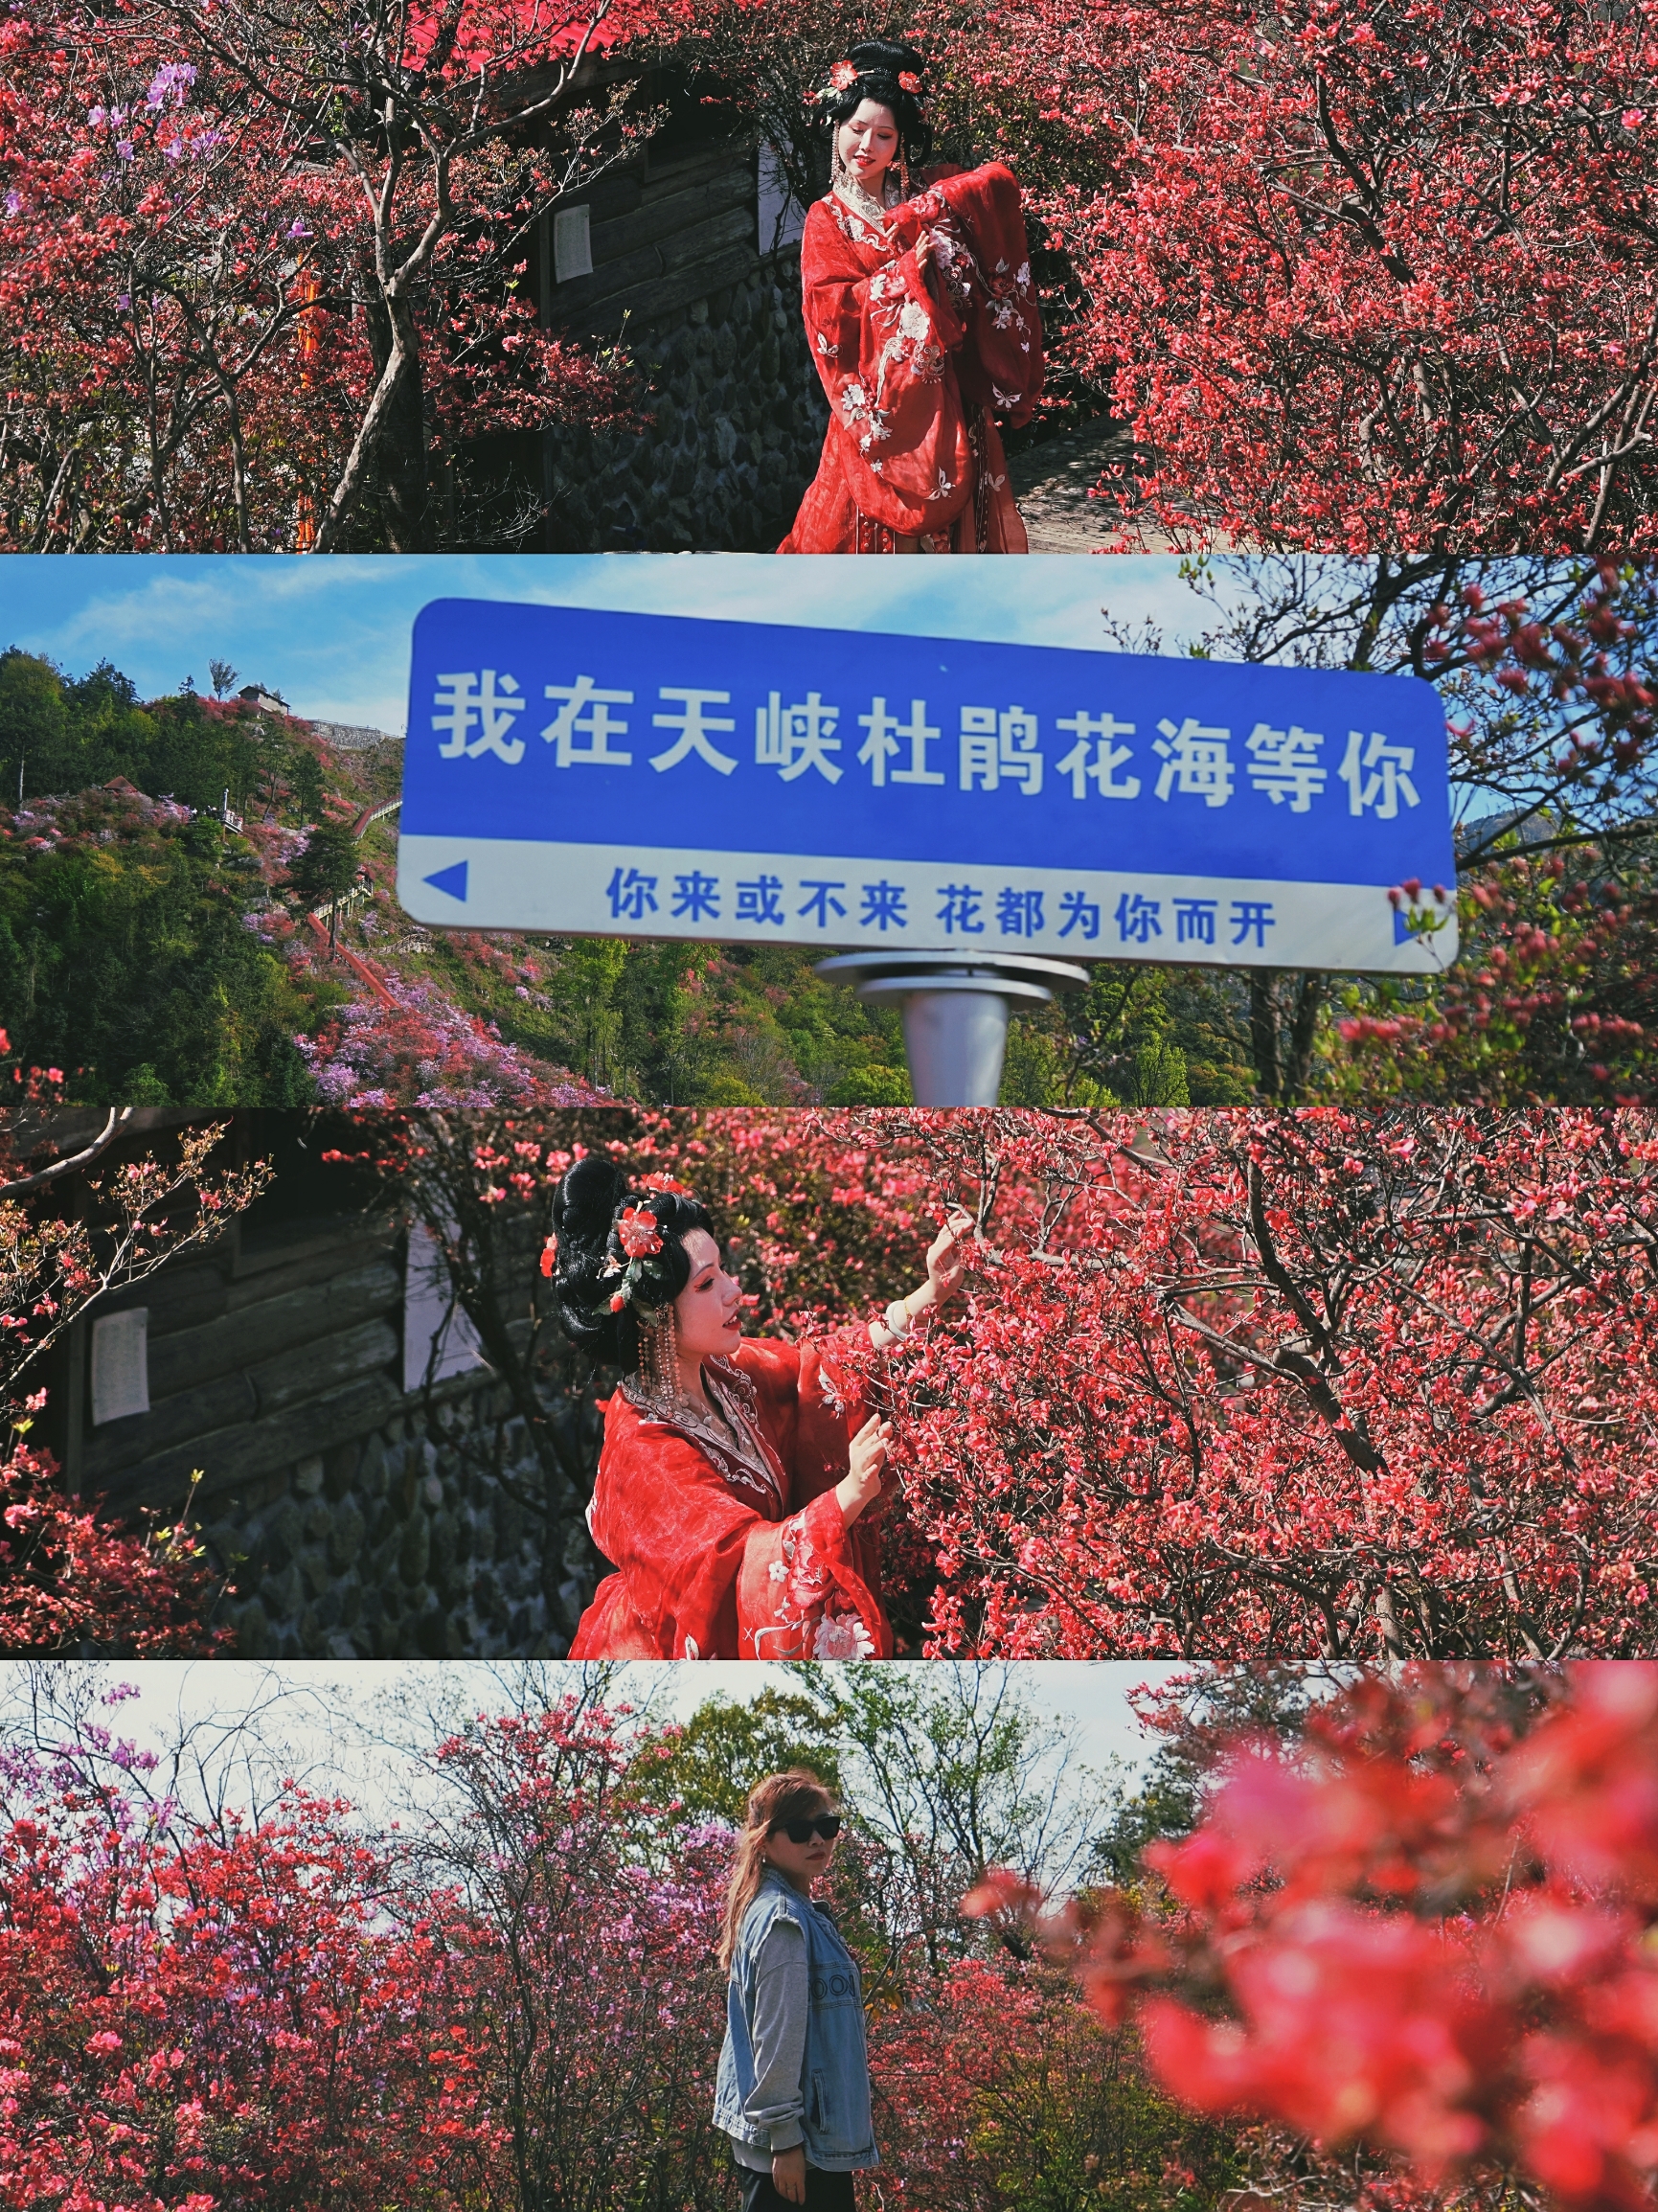 #春天玩点花的   安庆市是国家级历史文化名城，古皖文化、禅宗文化、戏剧文化和桐城派文化在这里交相辉